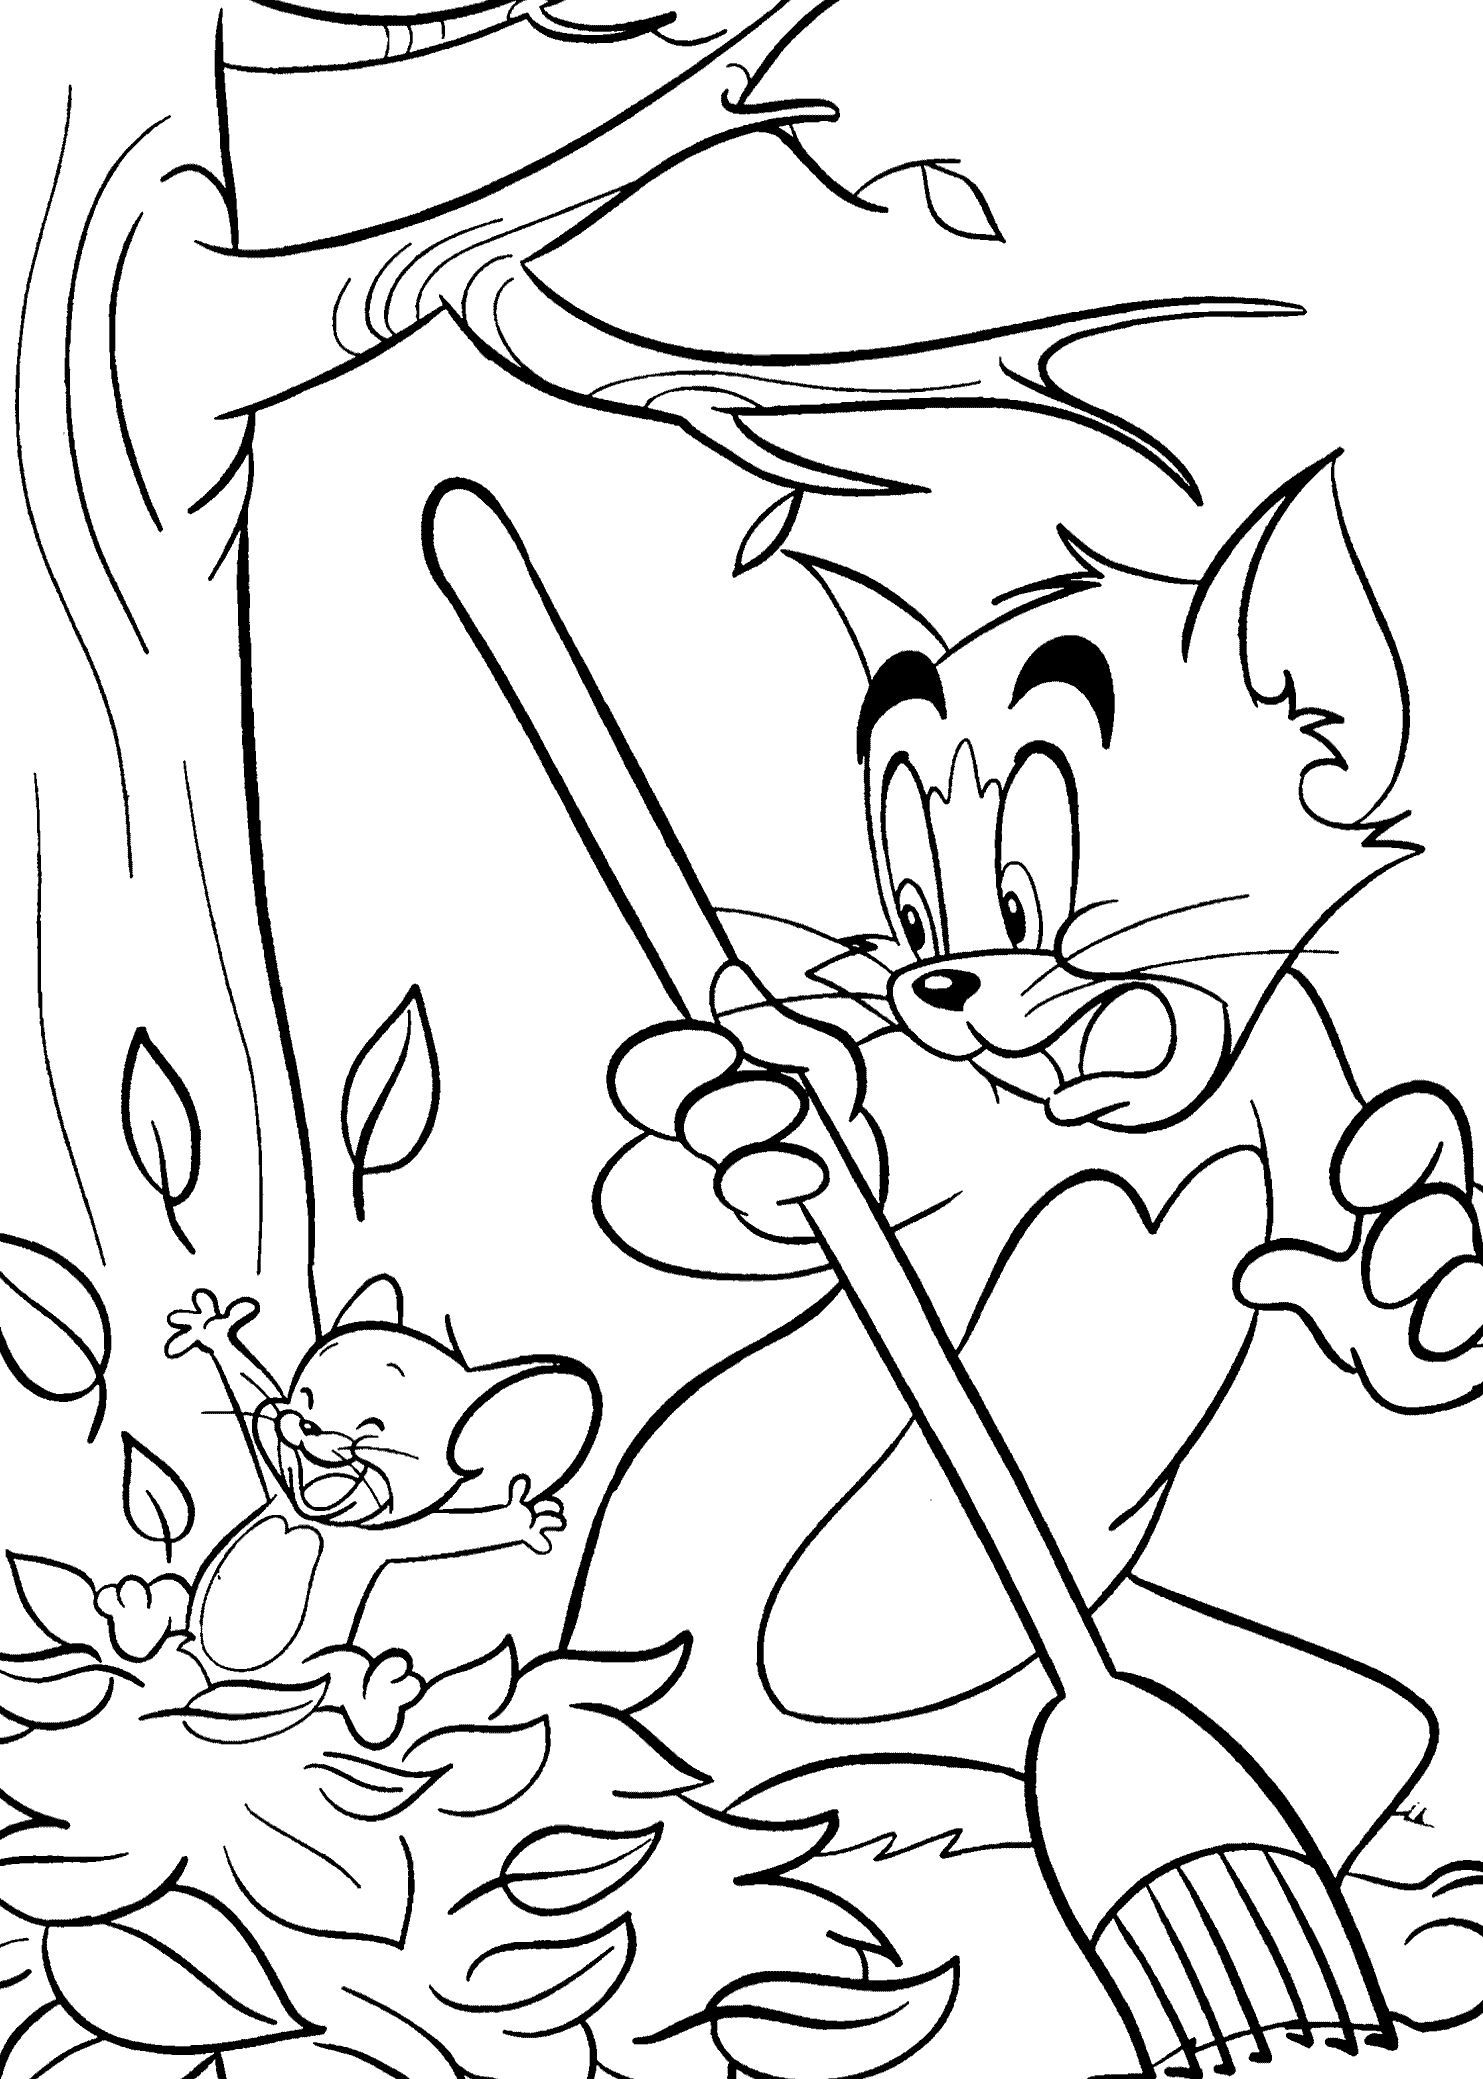 Tom Limpiando Y Jerry Arruinando